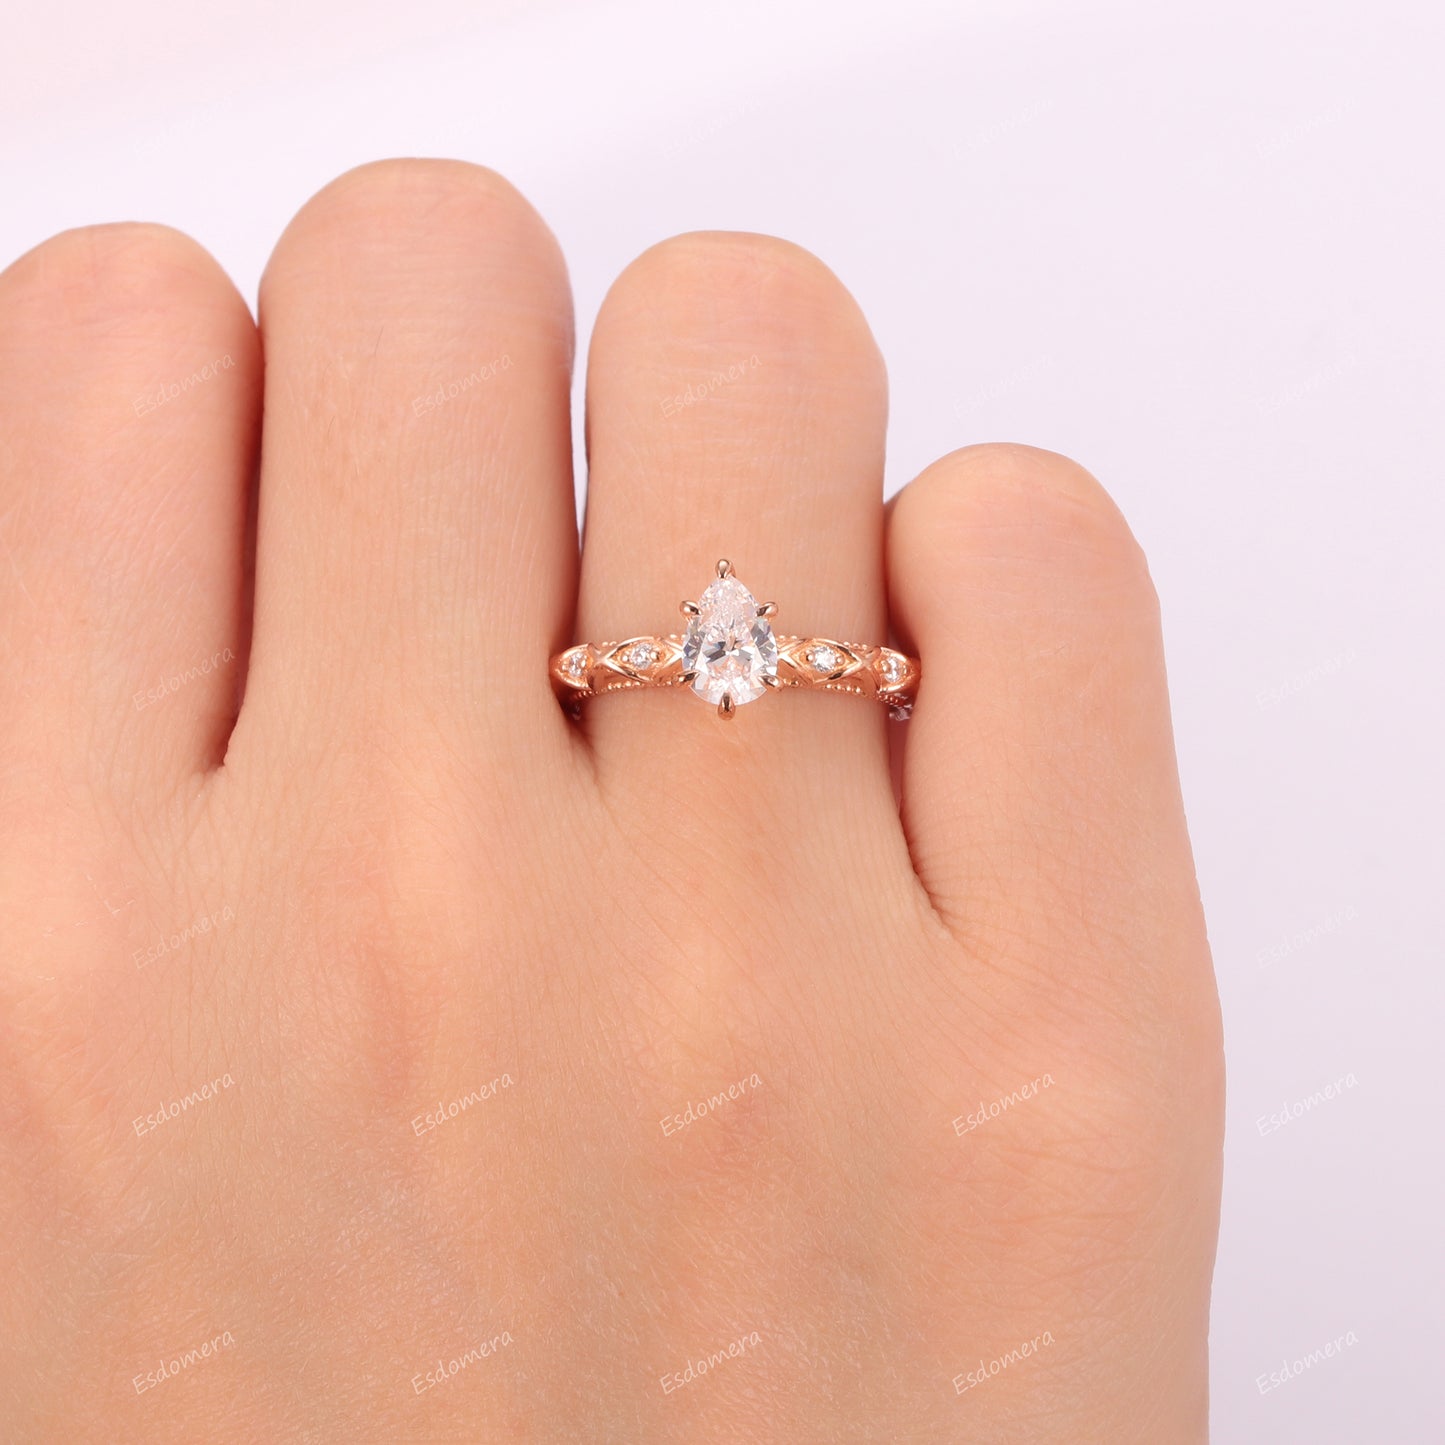 6 Prongs Pear Cut Moissanite Promise Ring For Women, 14k Rose Gold Milgrain Wedding Ring, Half Eternity Anniversary Ring